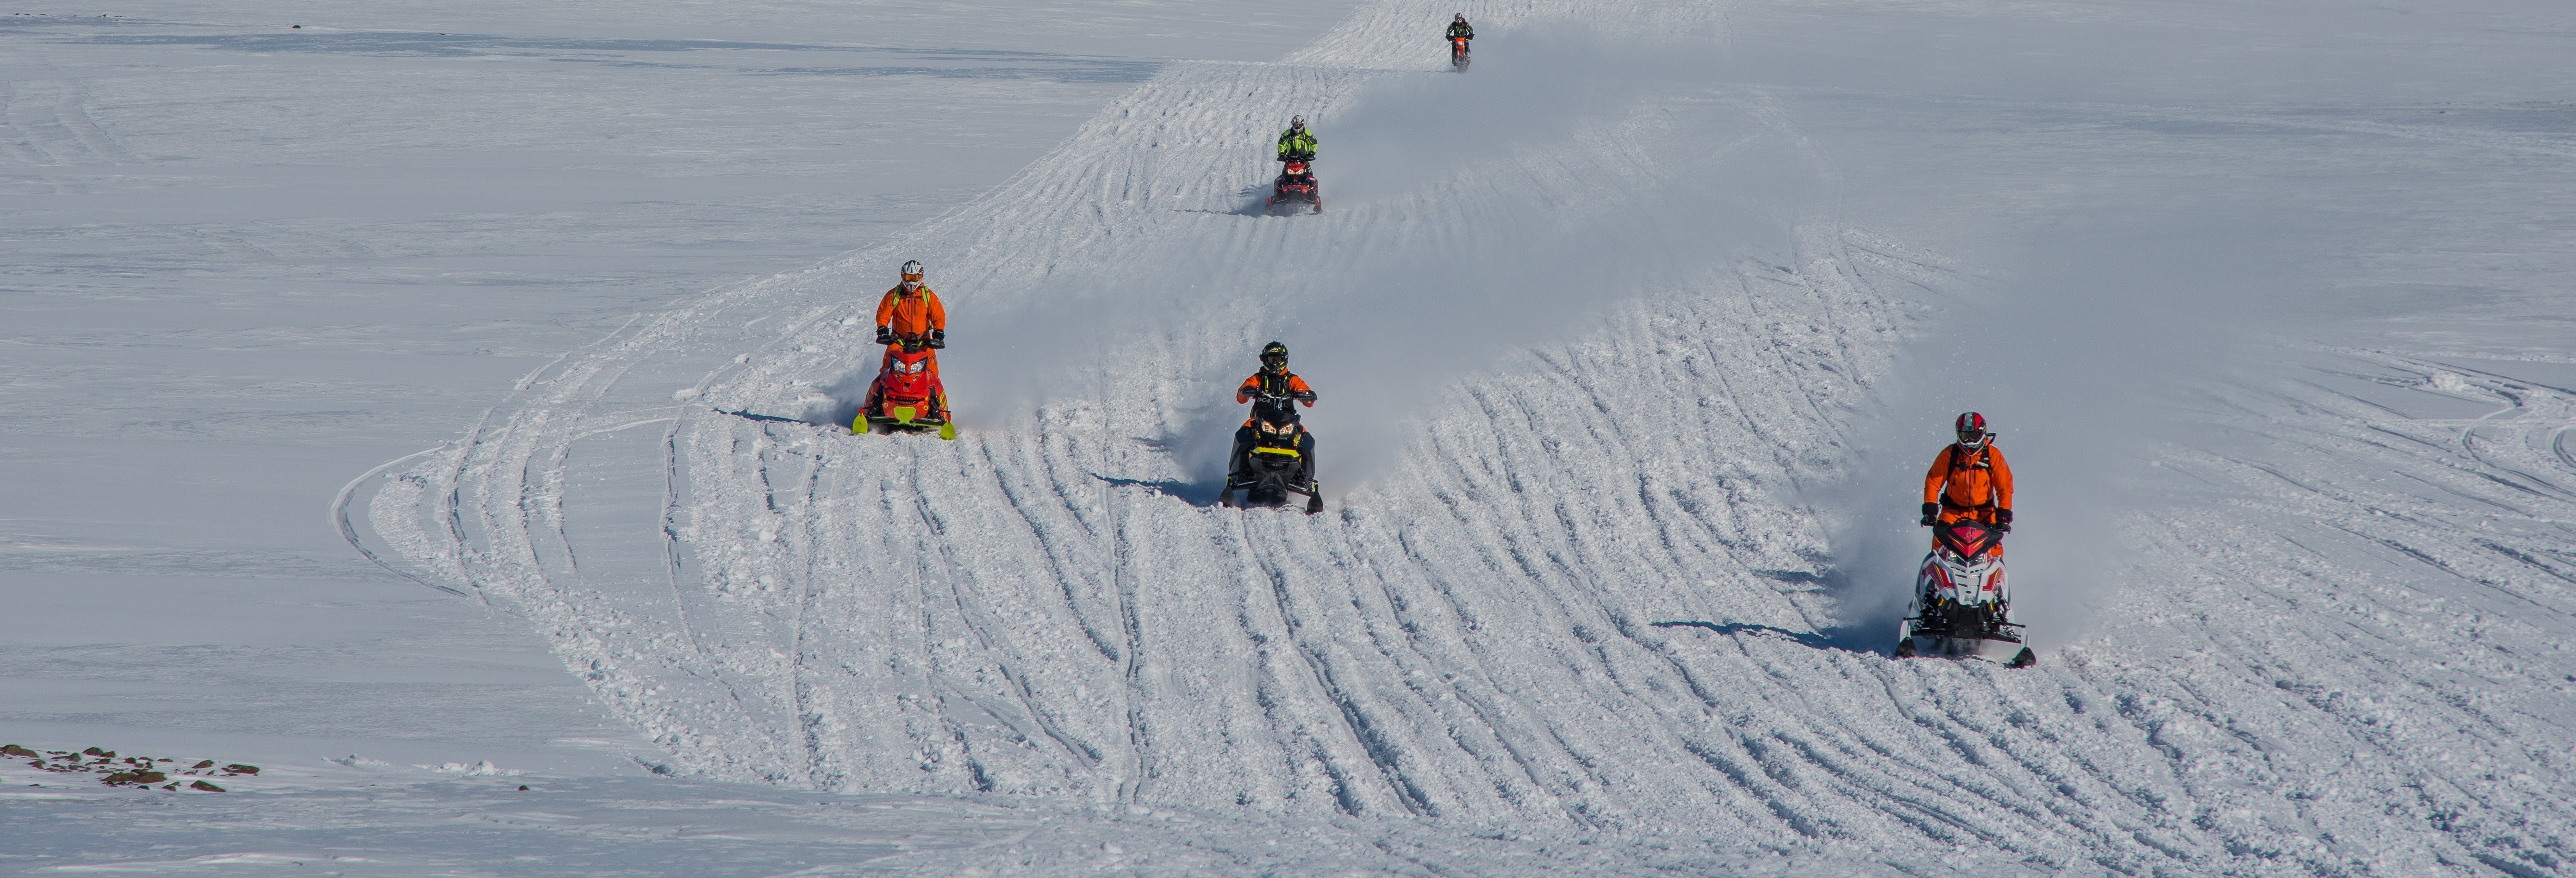 Paseo en moto de nieve por el glaciar Mýrdalsjökull